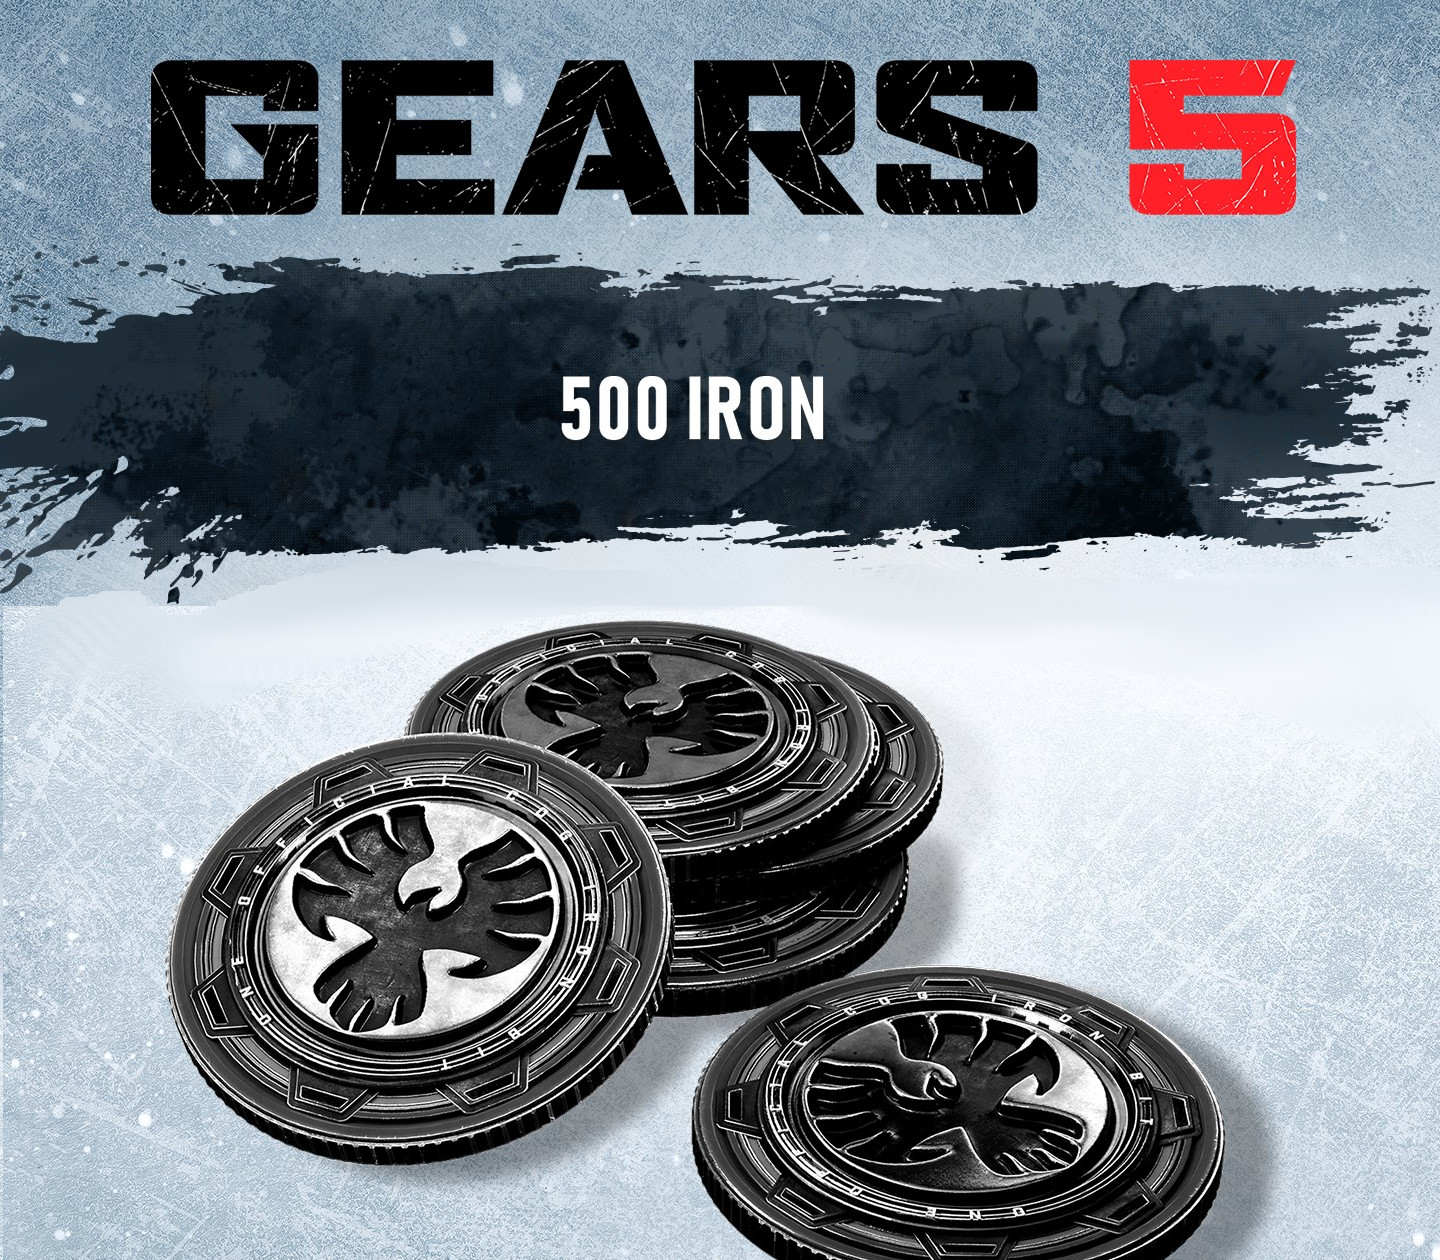 Gears 5 - 500 Iron DLC EU XBOX One / Windows 10 CD Key